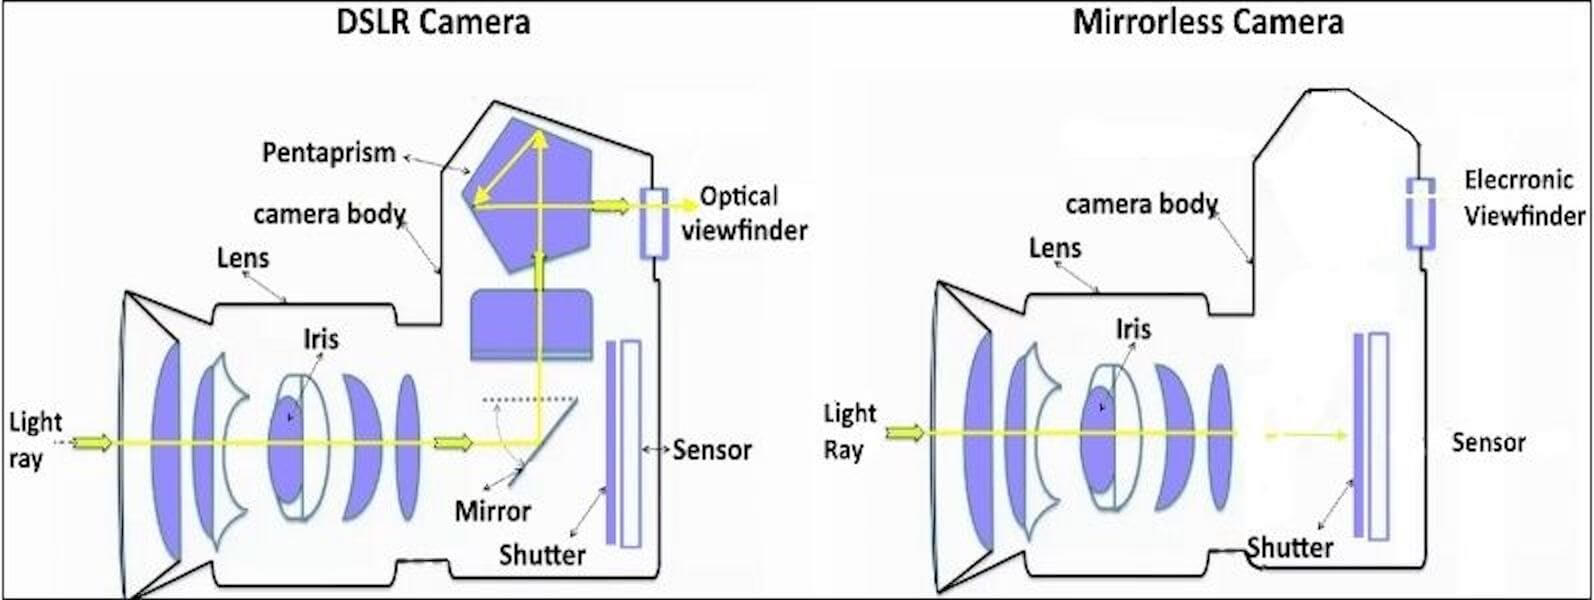 什么是反光镜相机 - 反光镜相机VS DSLR  - 图